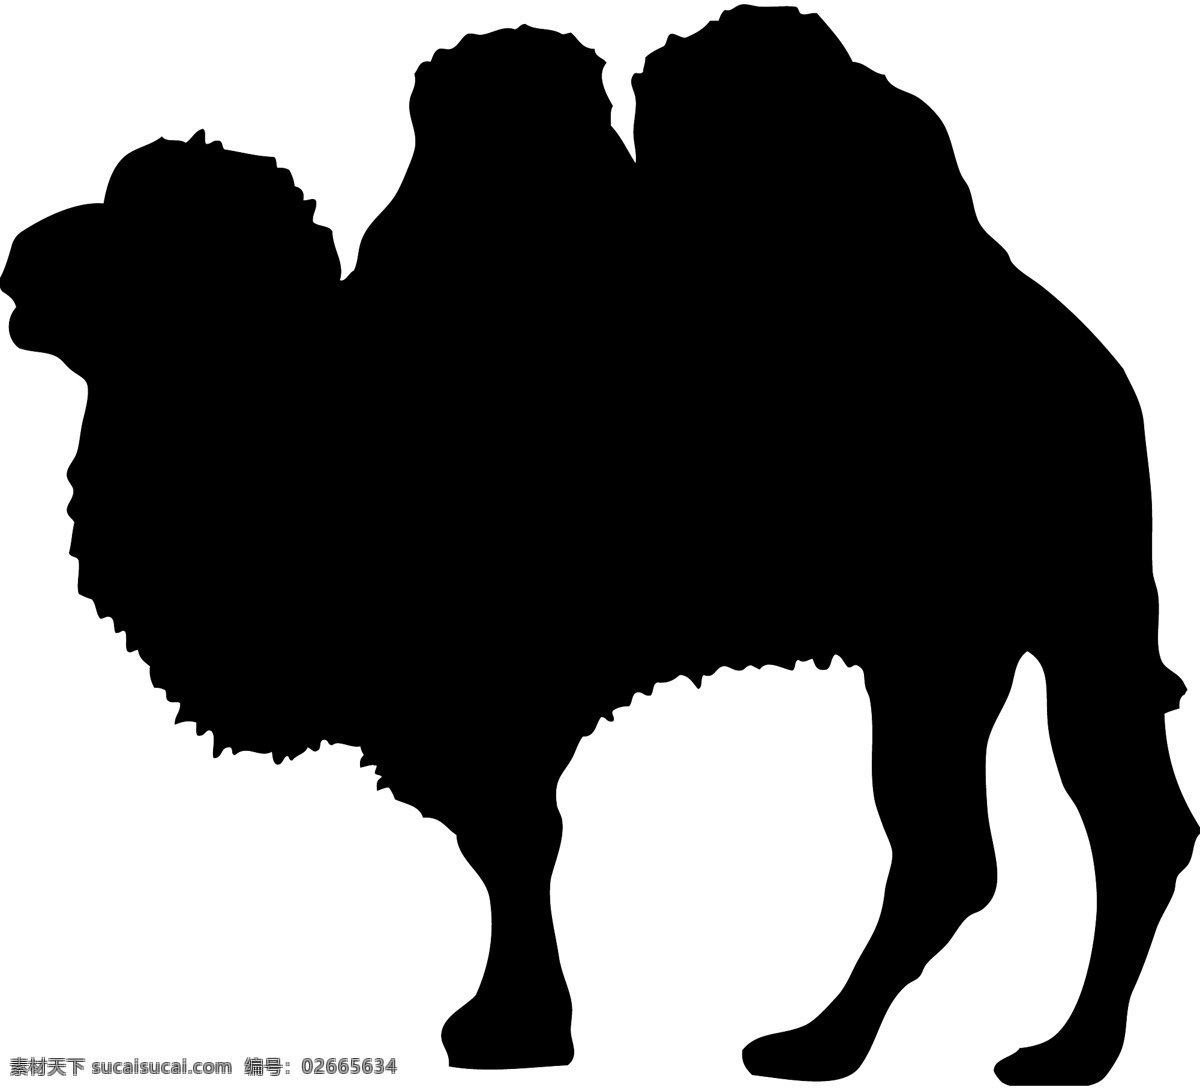 野生动物系列 骆驼剪影 骆驼 矢量图 动物世界 大自然 卡通 剪影 户外 野外 标本 图标 标识 标志 动物园 猛兽 丛林 草原 荒野 旷野 camel 双峰骆驼 沙漠骆驼 矢量 动物 昆虫类 生物世界 野生动物